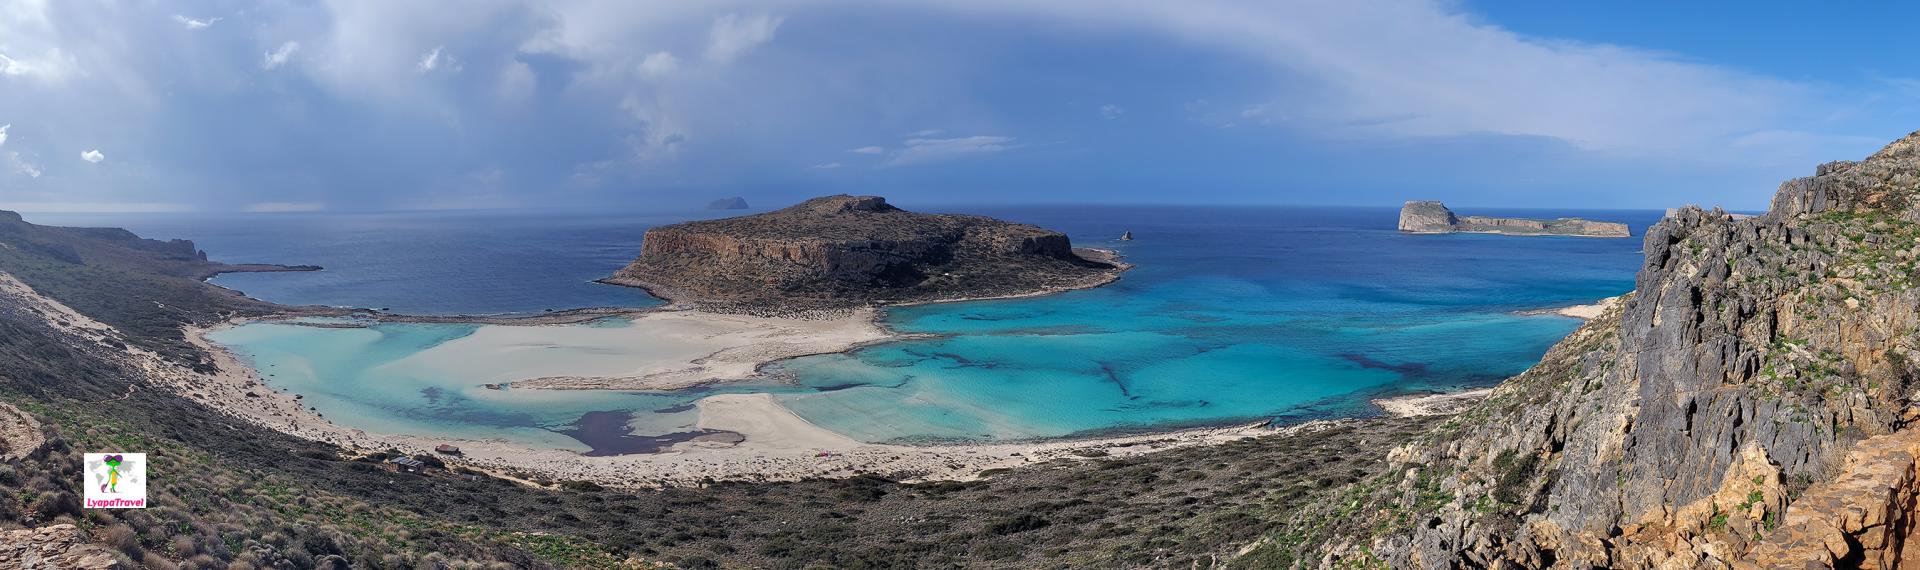 Остров Крит что посмотреть